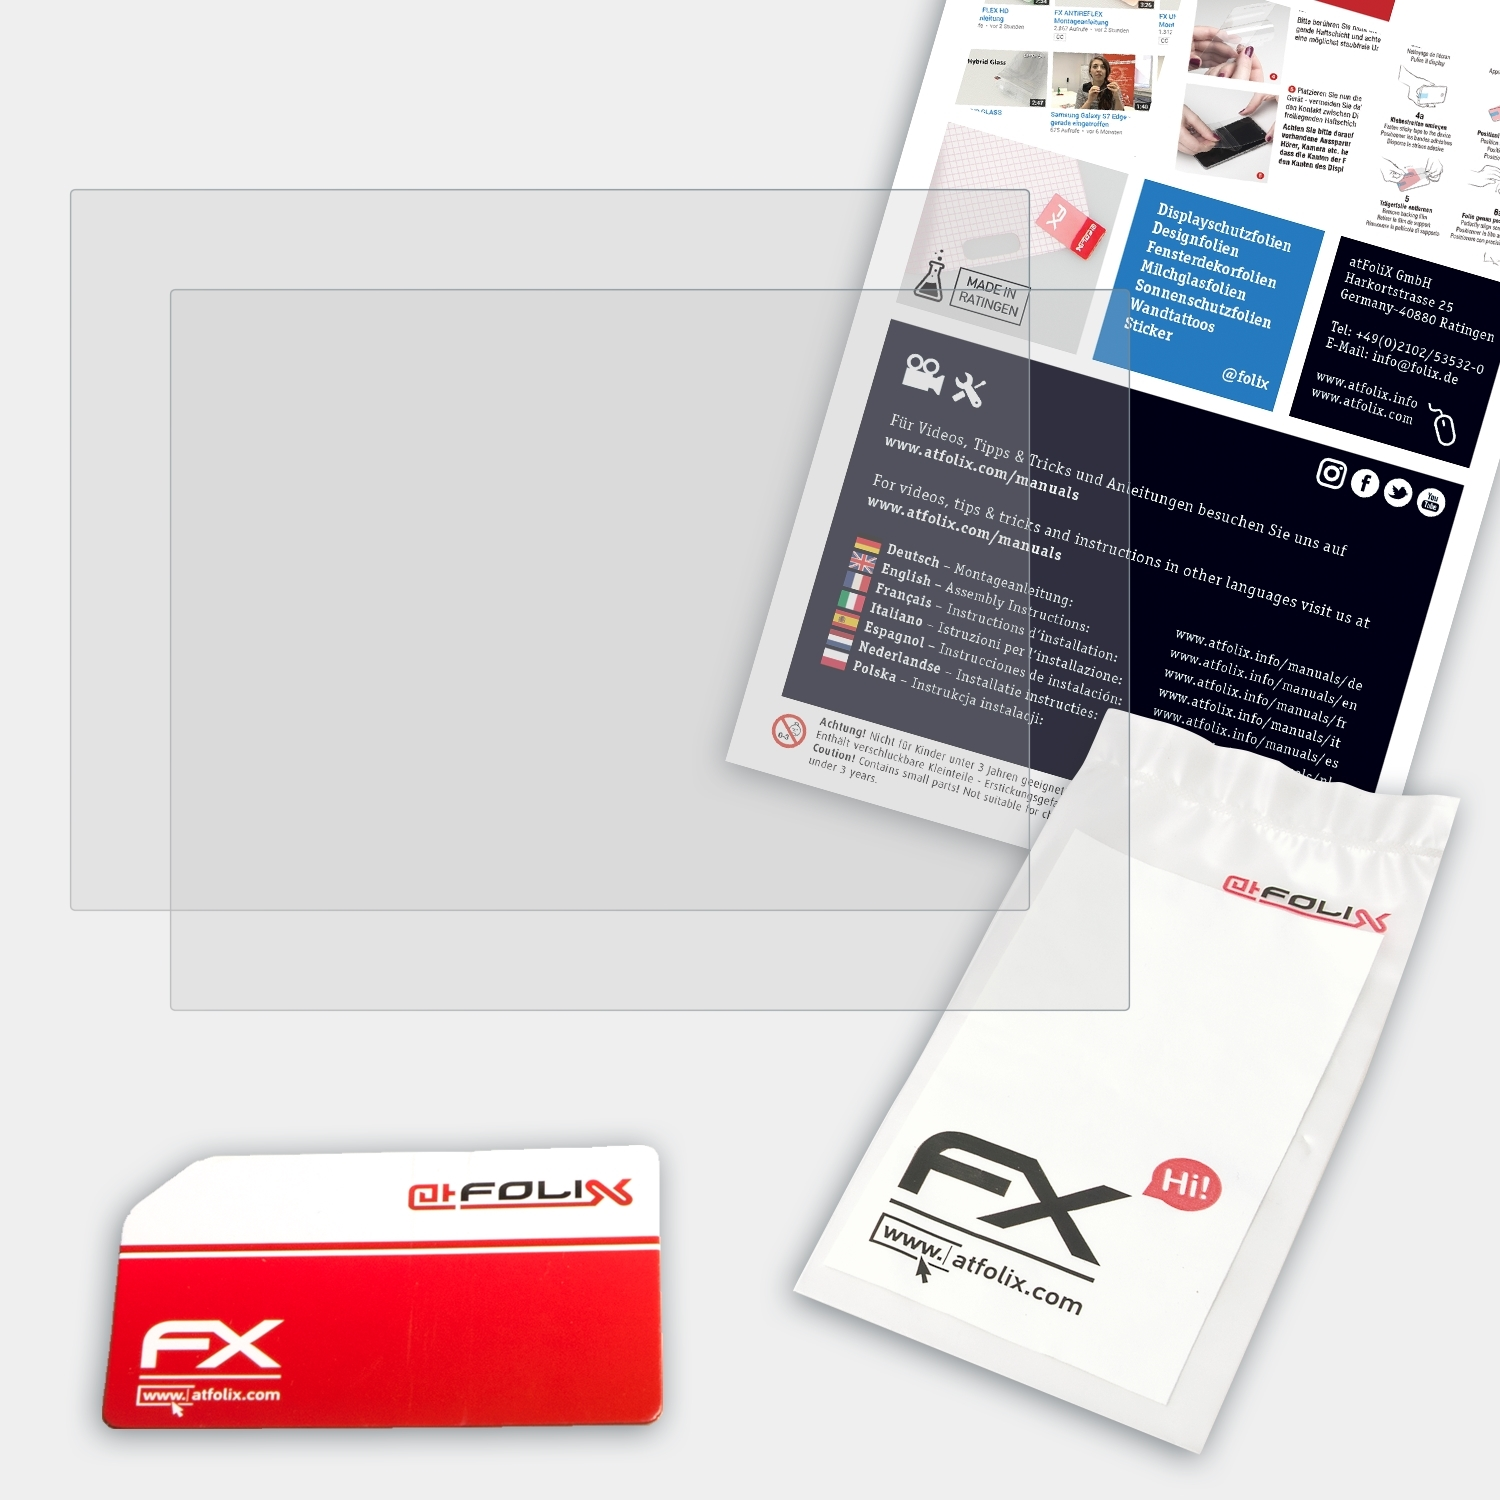 2x Displayschutz(für Panasonic FX-Antireflex CF-H2) ATFOLIX ToughBook